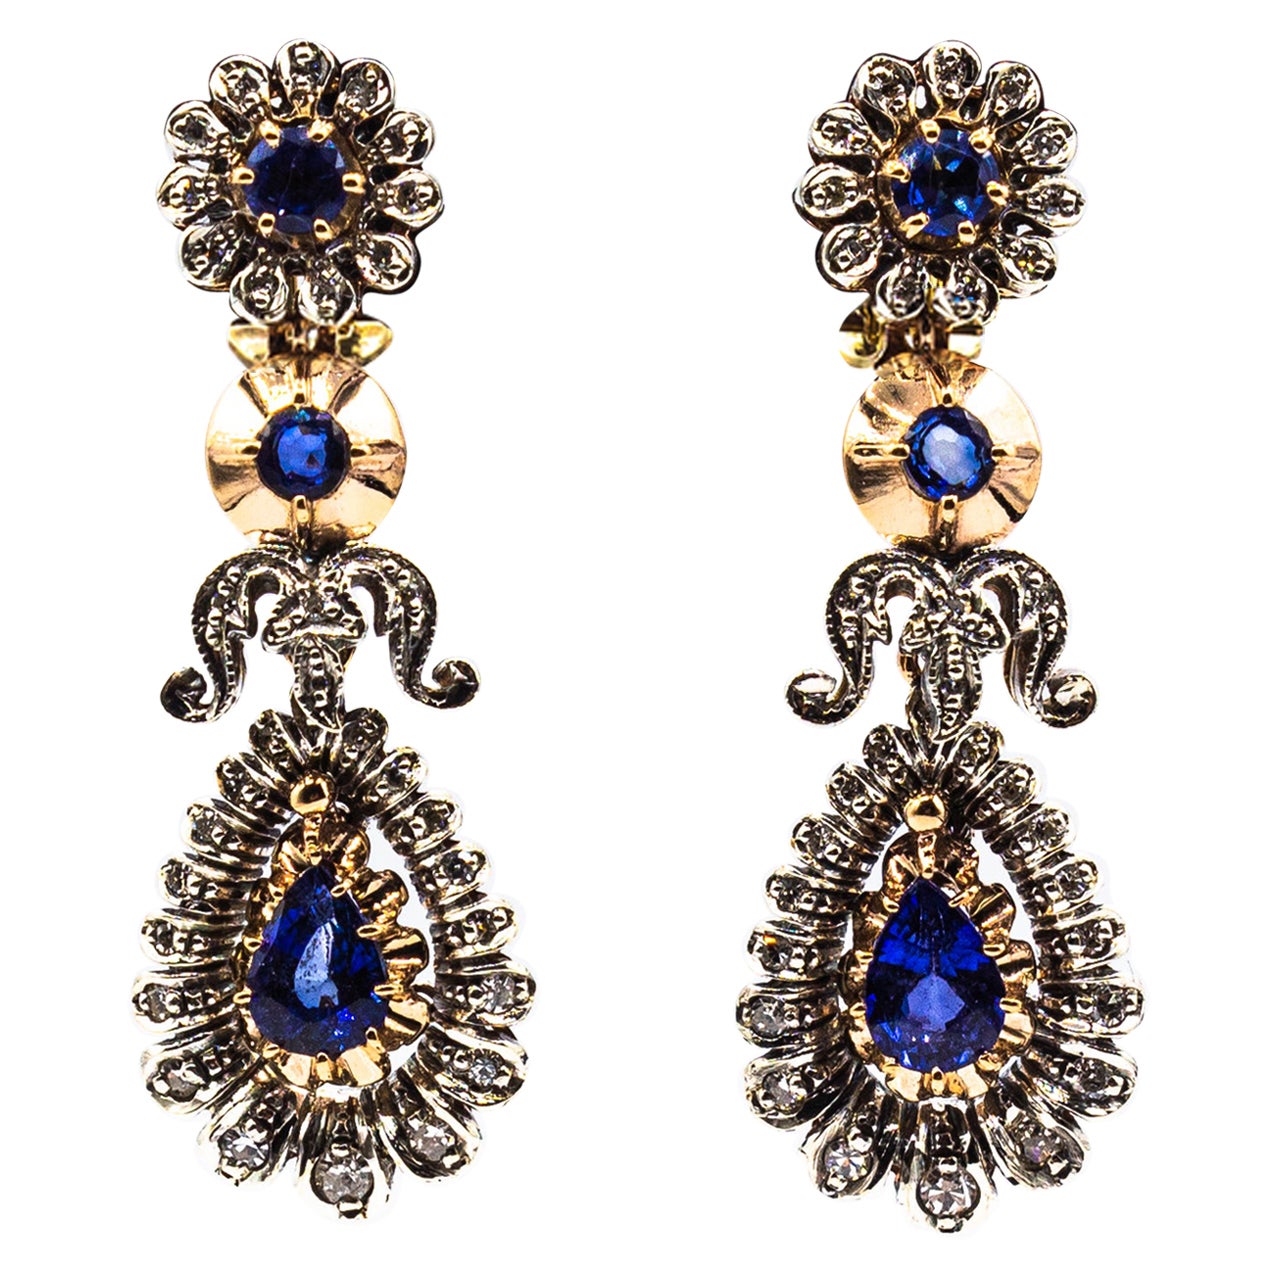 Boucles d'oreilles pendantes de style Art déco en or jaune avec diamants blancs, saphirs bleus et saphirs bleus